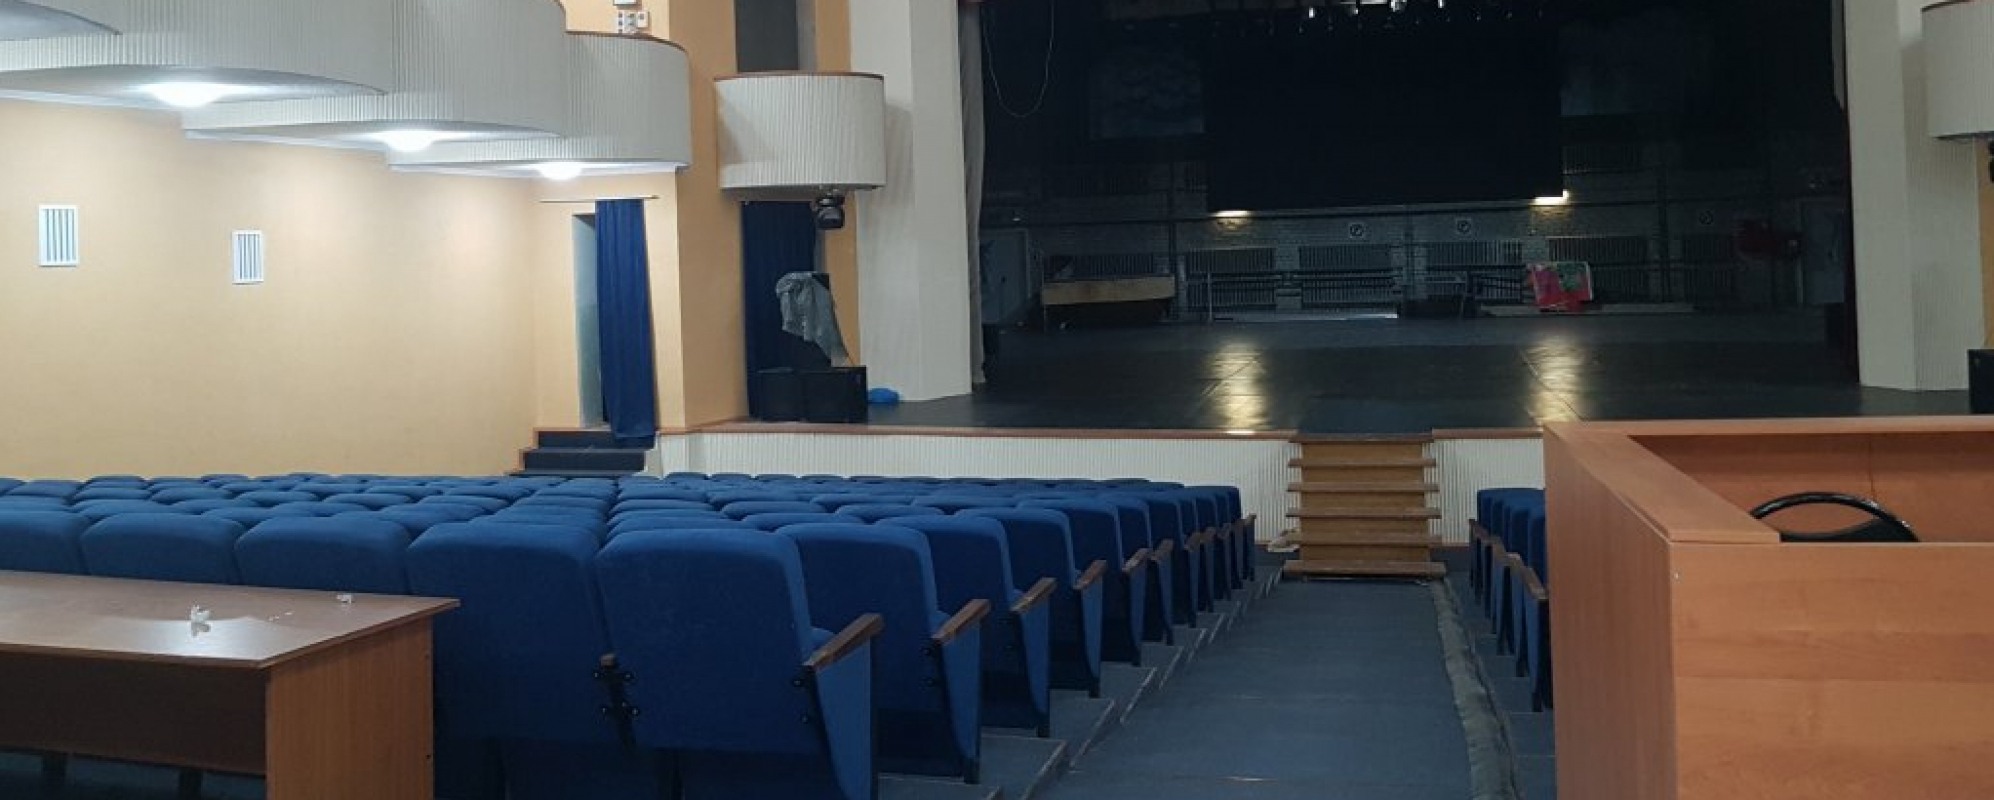 Фотографии концертного зала Театральный зал ДК тракторозаводского района